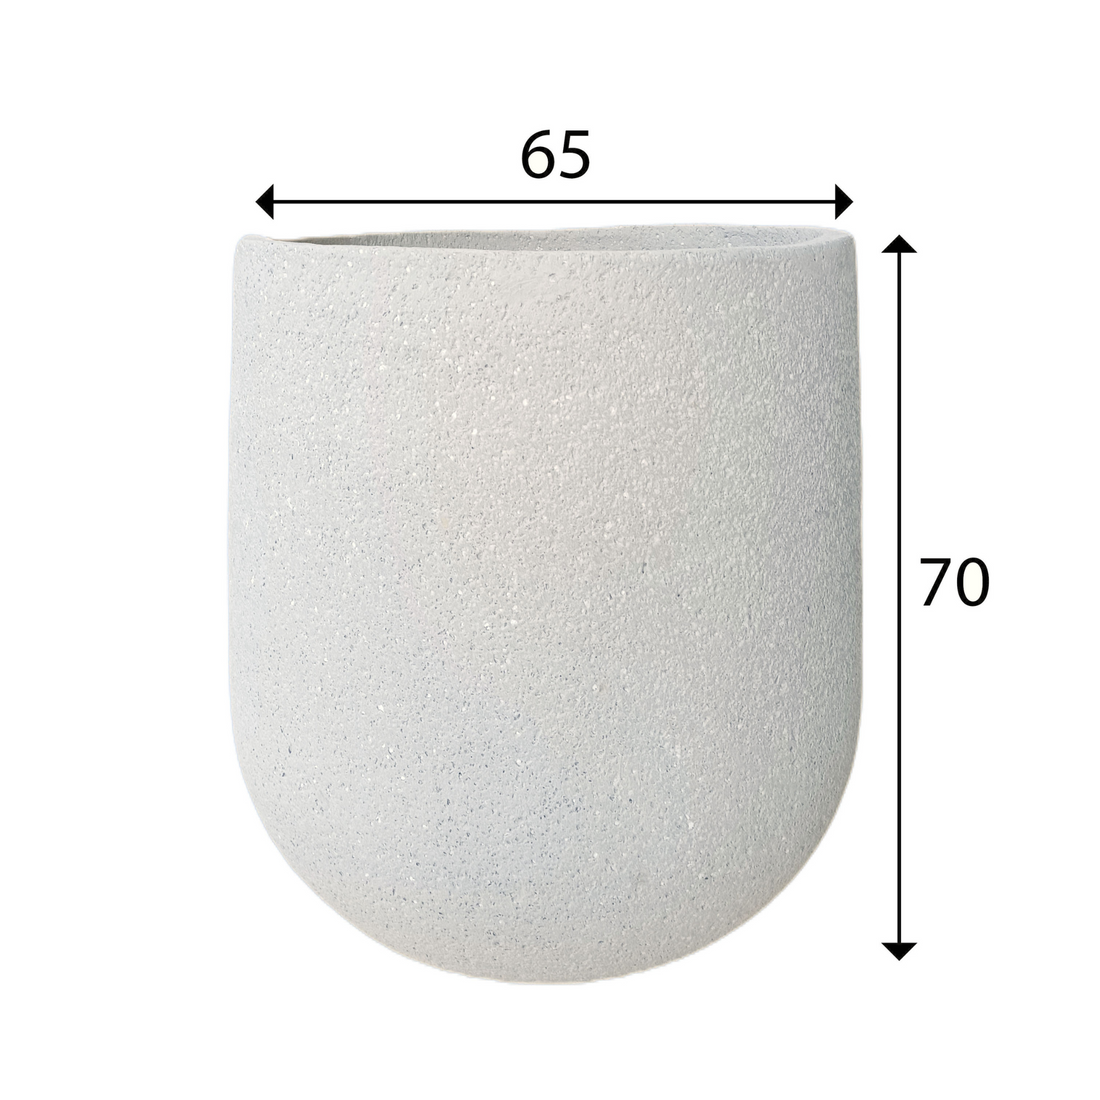 Grey Foam Indoor/Outdoor Plant Pot By Roots65W*65D*70H.